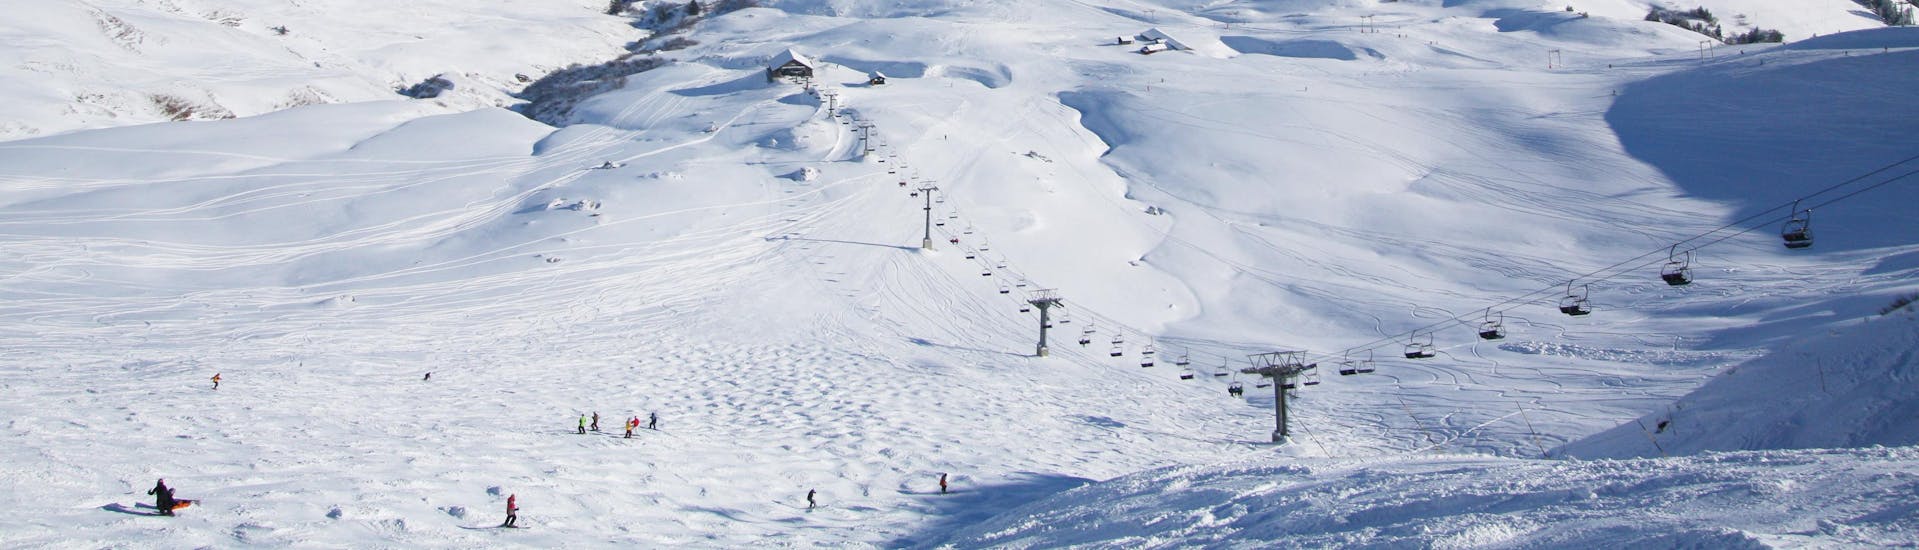 Blick auf die schneebedeckten Pisten des schweizerischen Skigebits Les Crosets wo örtliche Skischulen eine breite Palette an Skikursen für all diejenigen, die das Skifahren lernen wollen, anbieten.